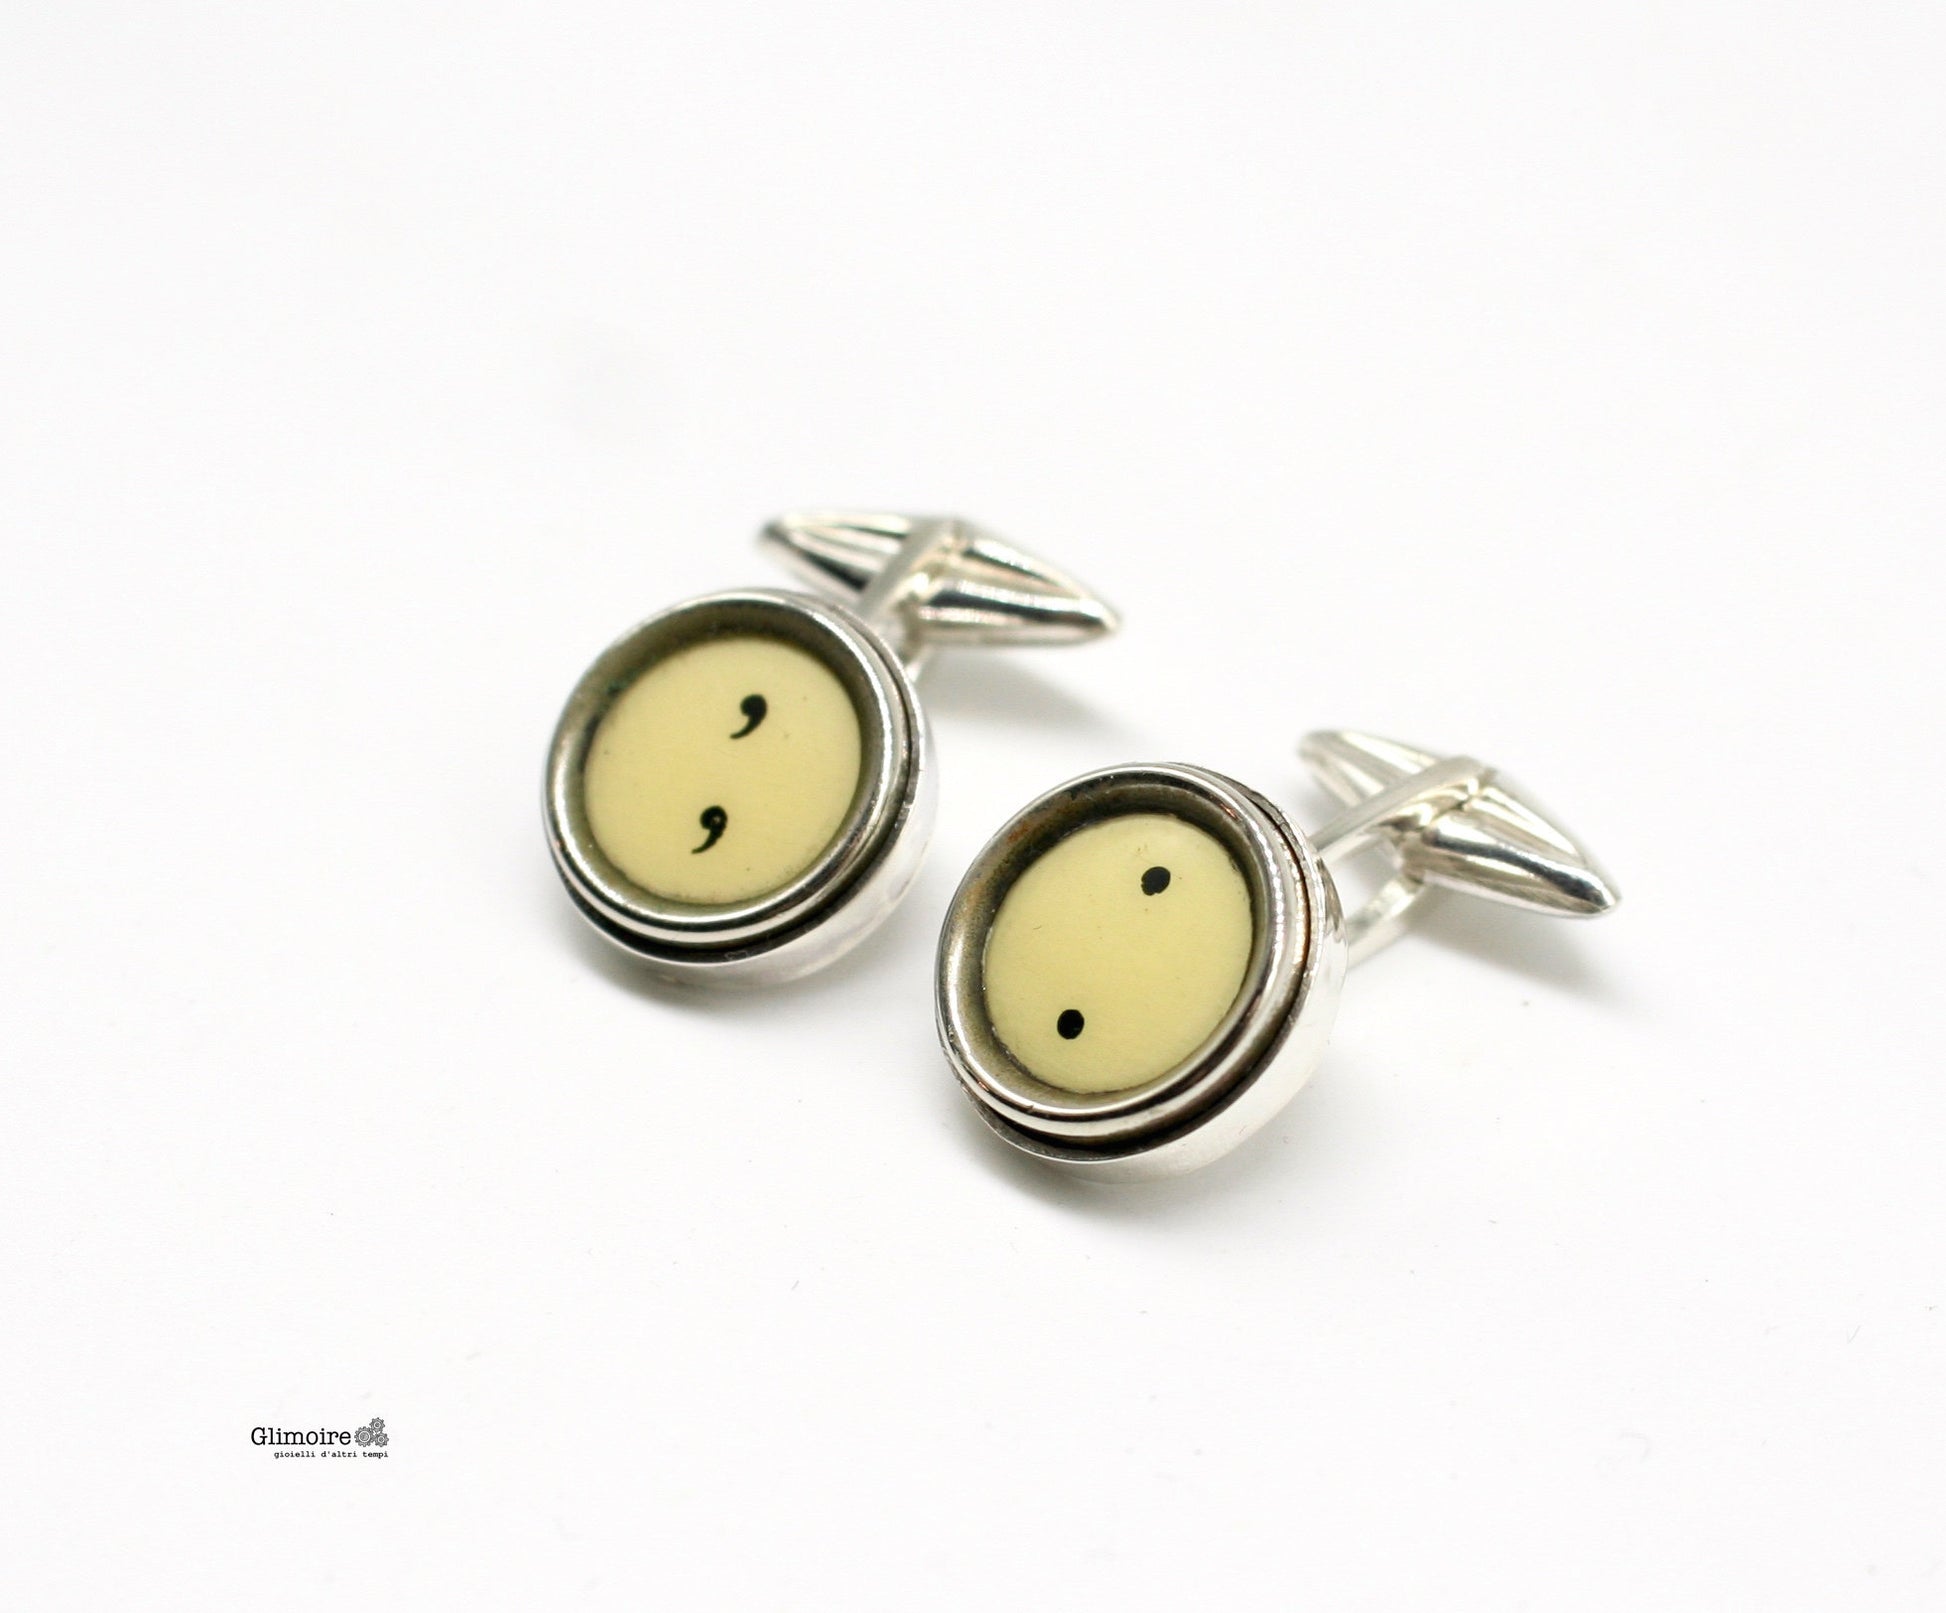 Gemelli in argento con punteggiatura con tasti di macchina da scrivere Triumph - punto & virgola  art.314 - Glimoire